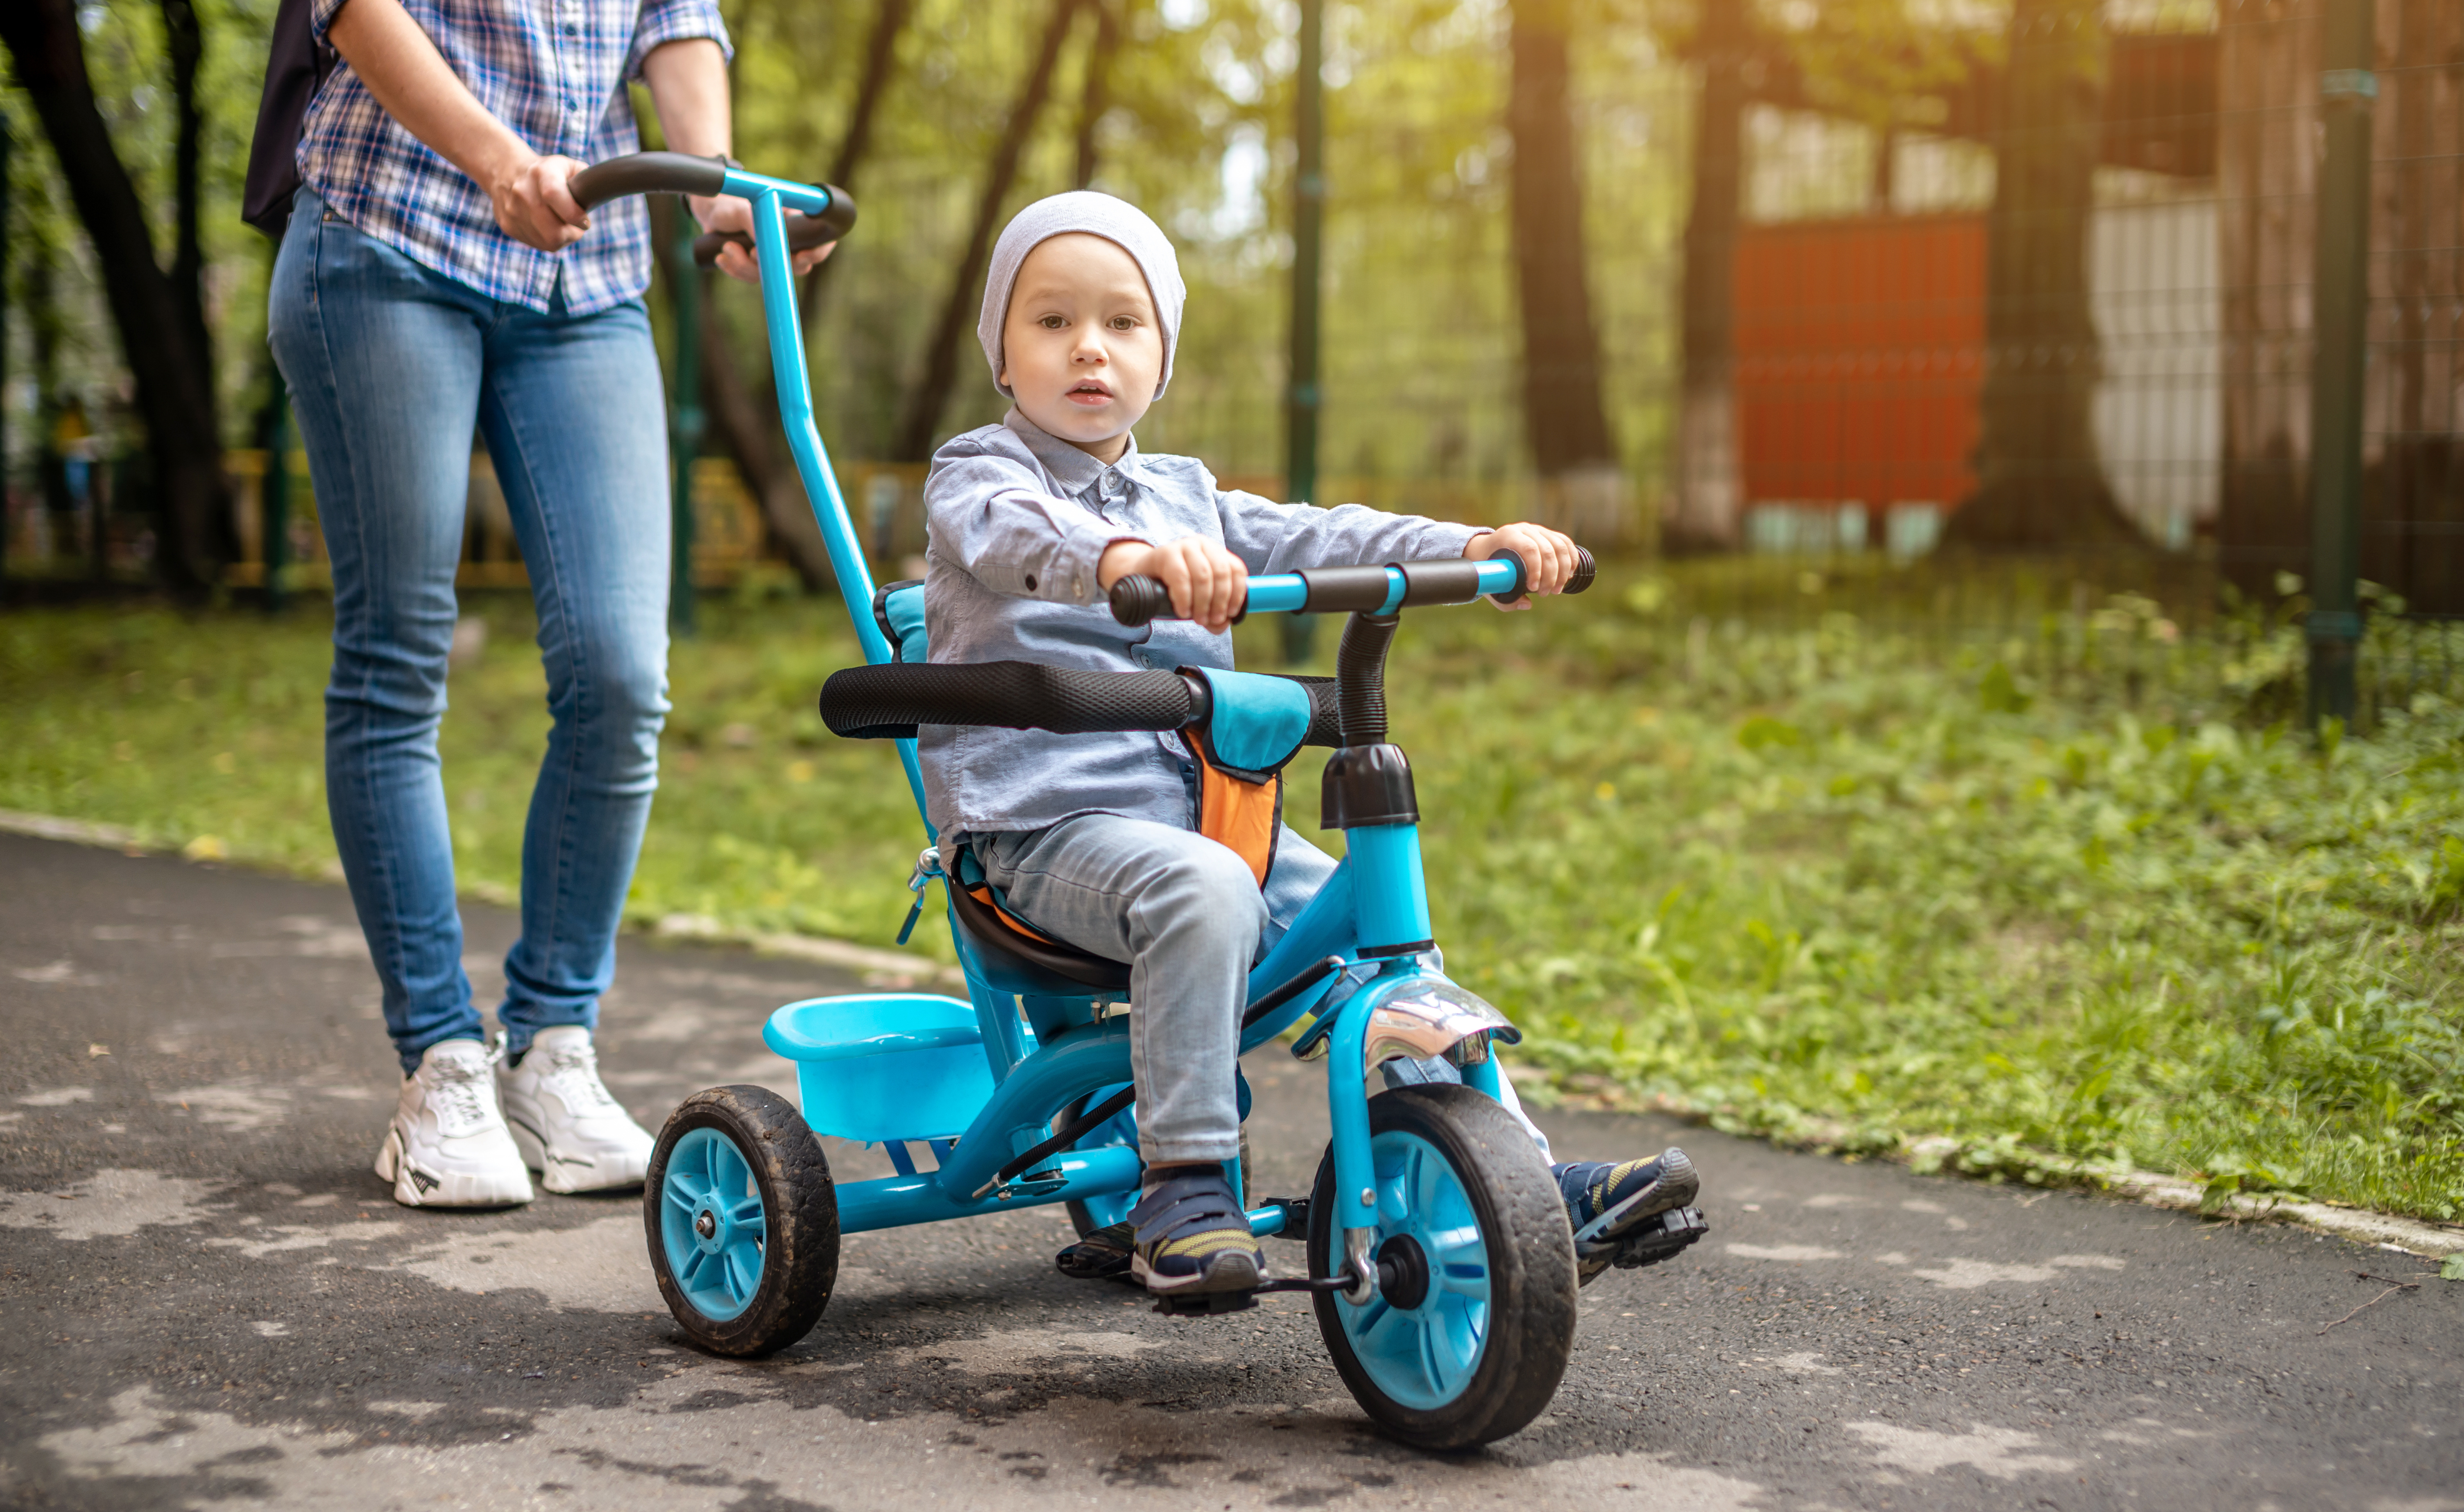 Rowerek trójkołowy dla dziecka - od kiedy i jaki wybrać?